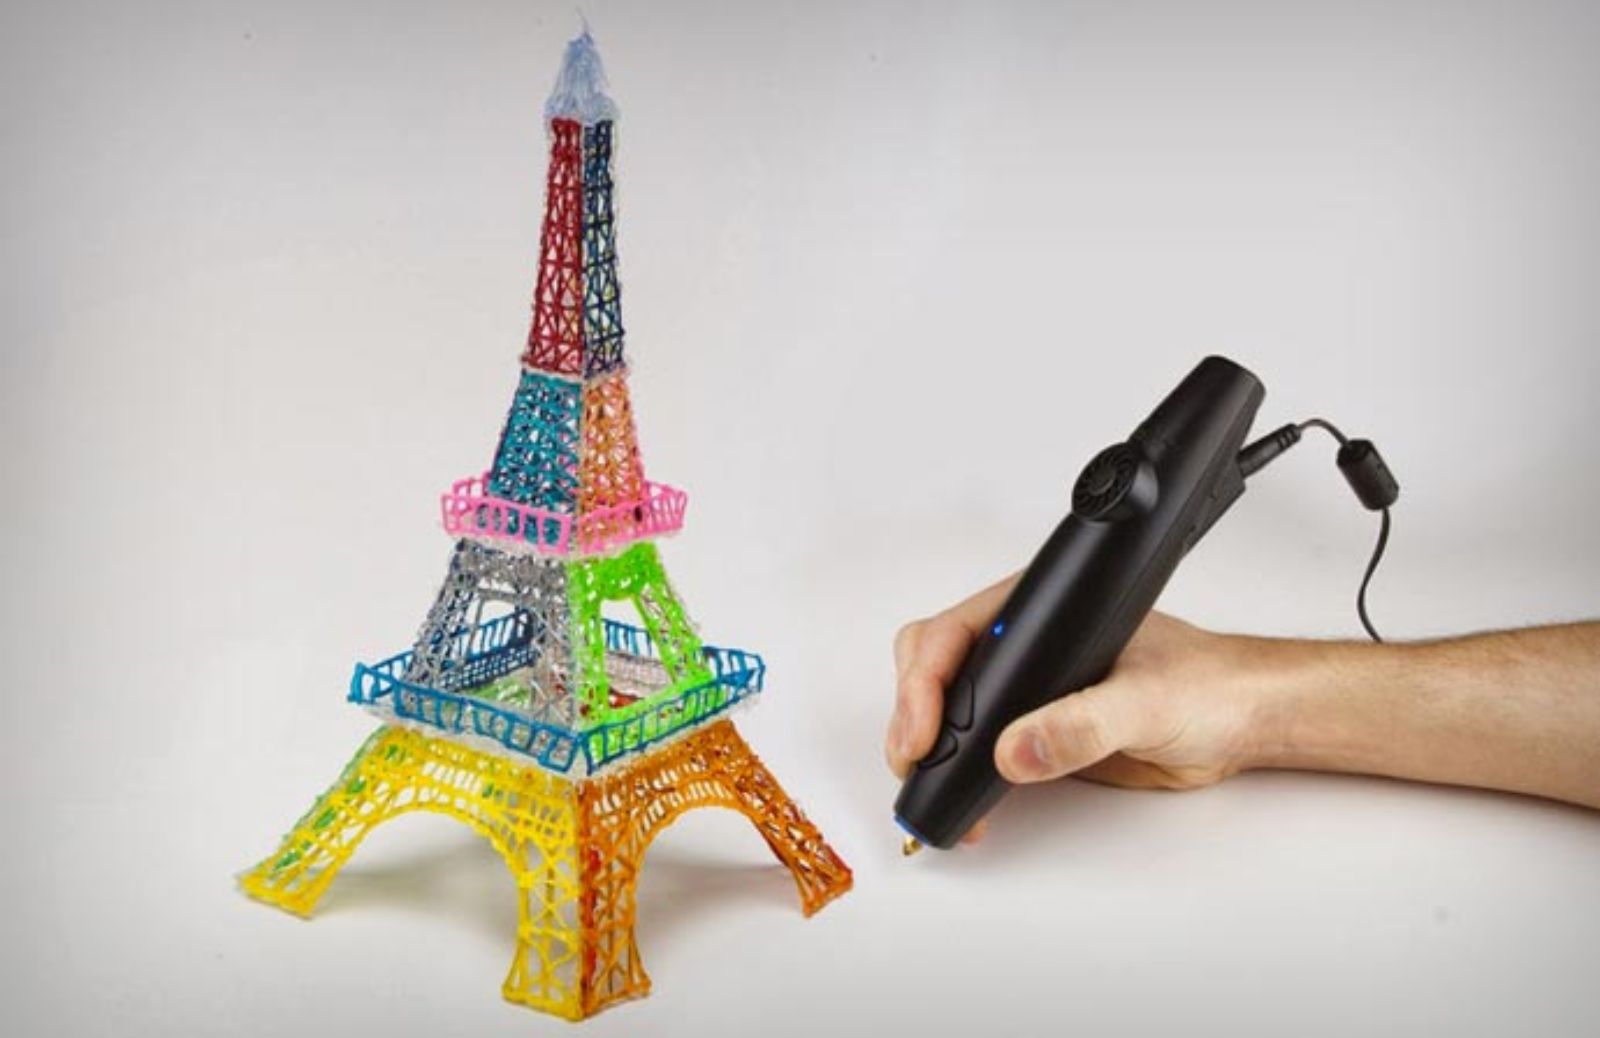 3Doodler, la penna che scrive in 3D